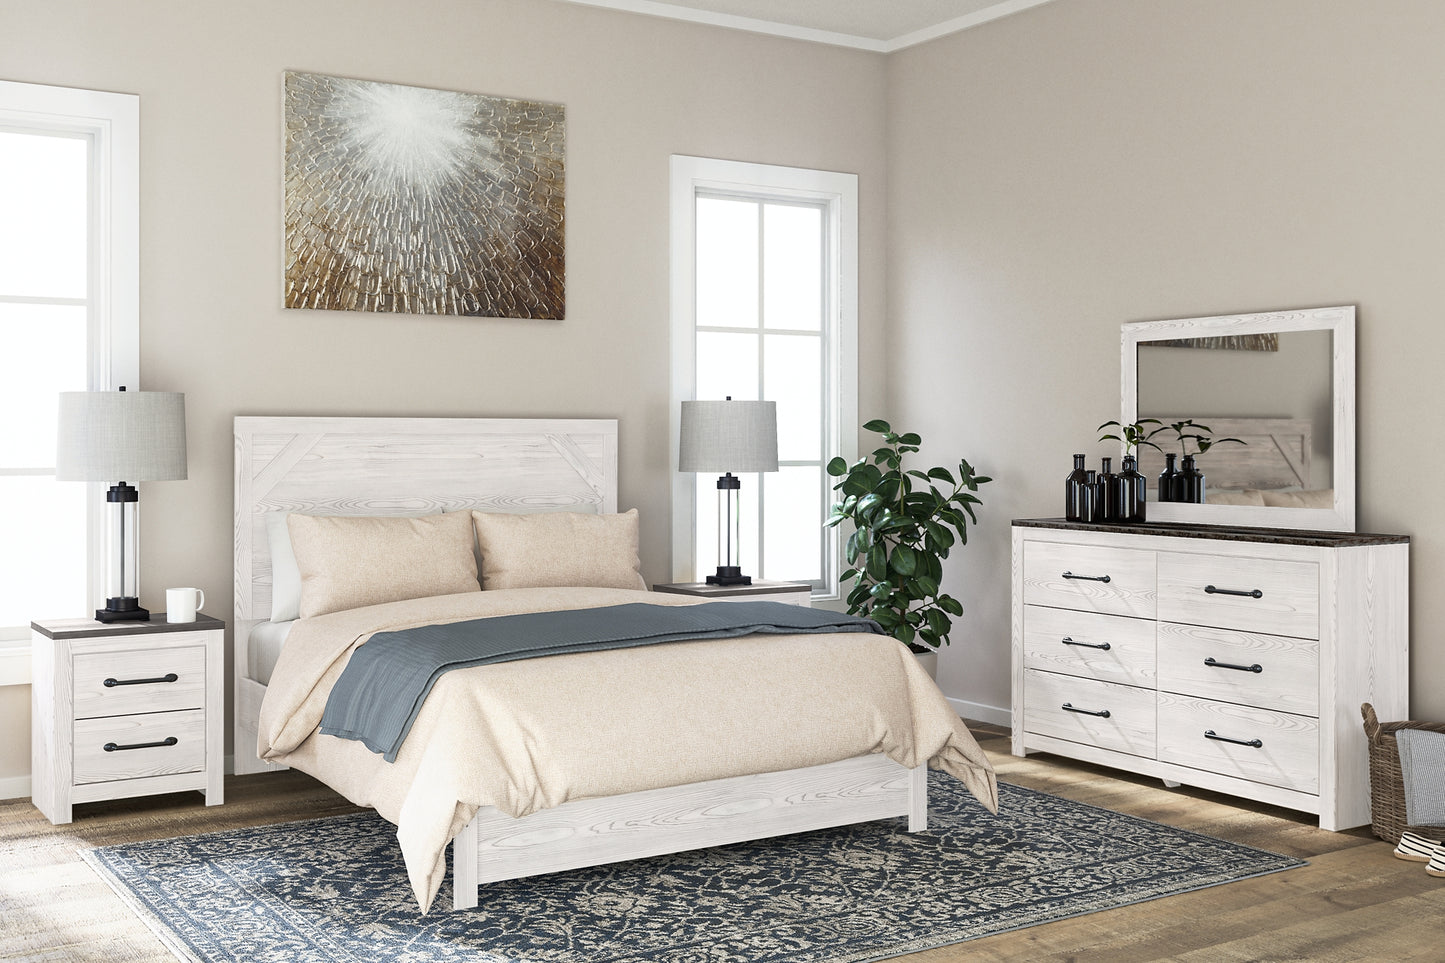 Gerridan Queen Panel Bed with Mirrored Dresser and 2 Nightstands